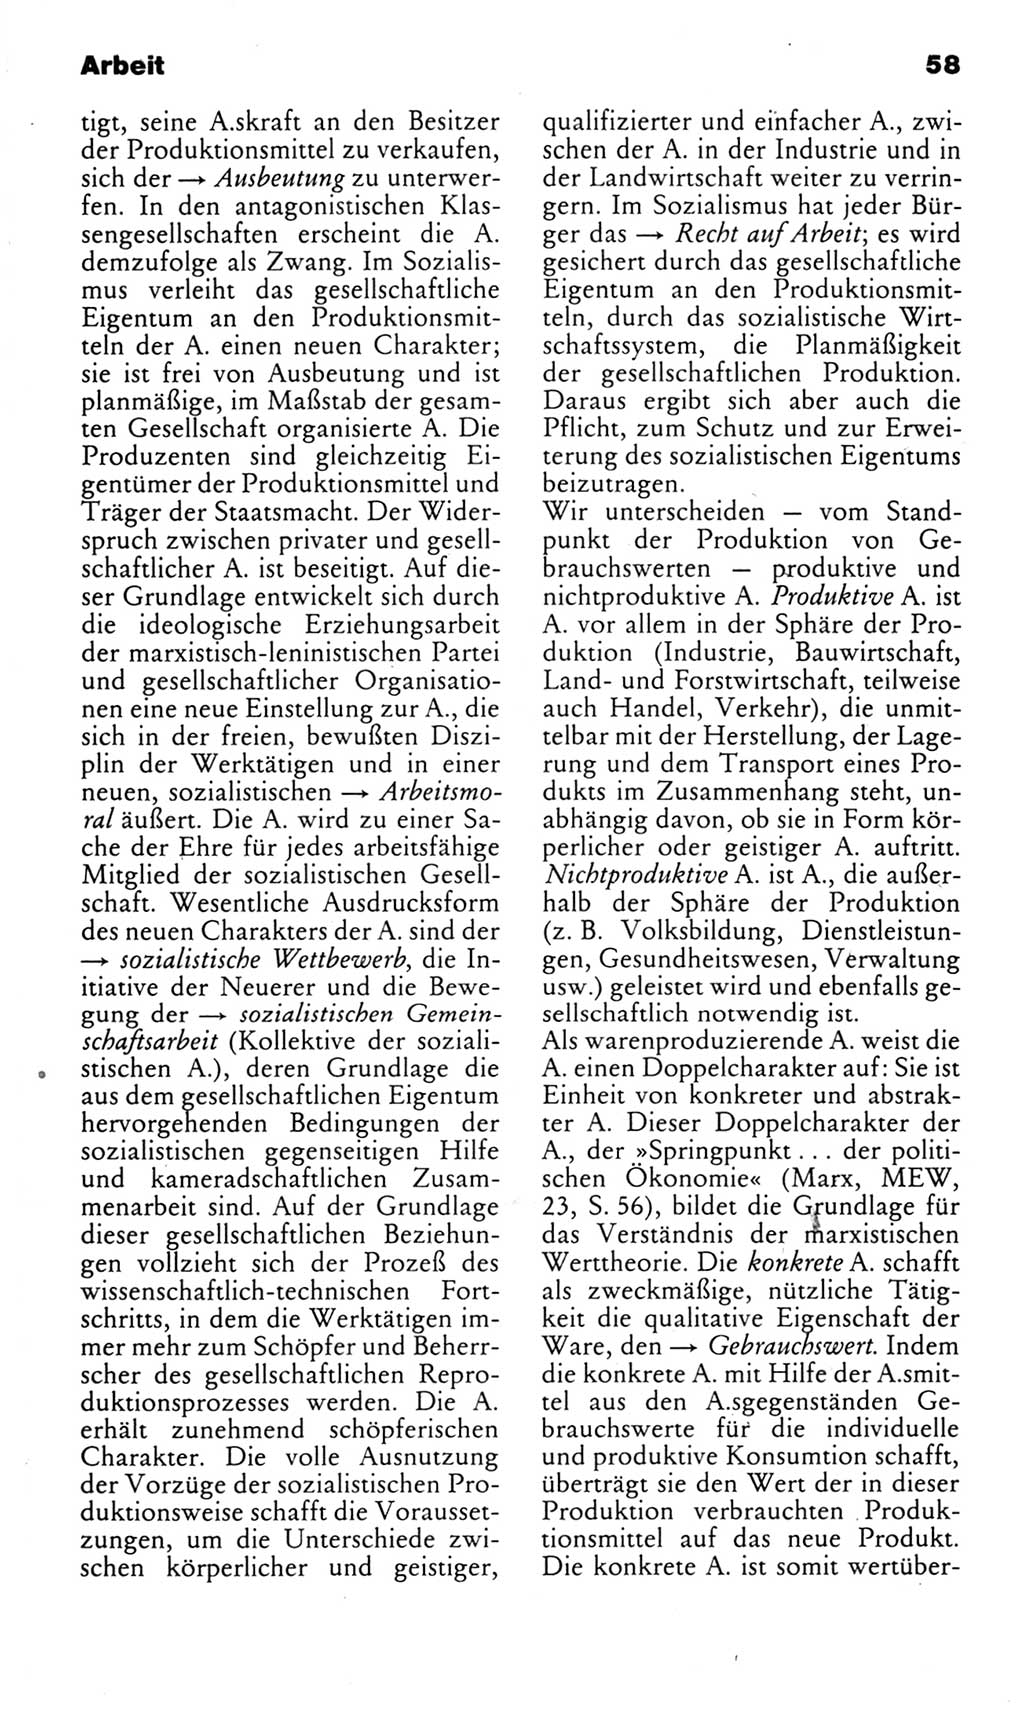 Kleines politisches Wörterbuch [Deutsche Demokratische Republik (DDR)] 1983, Seite 58 (Kl. pol. Wb. DDR 1983, S. 58)